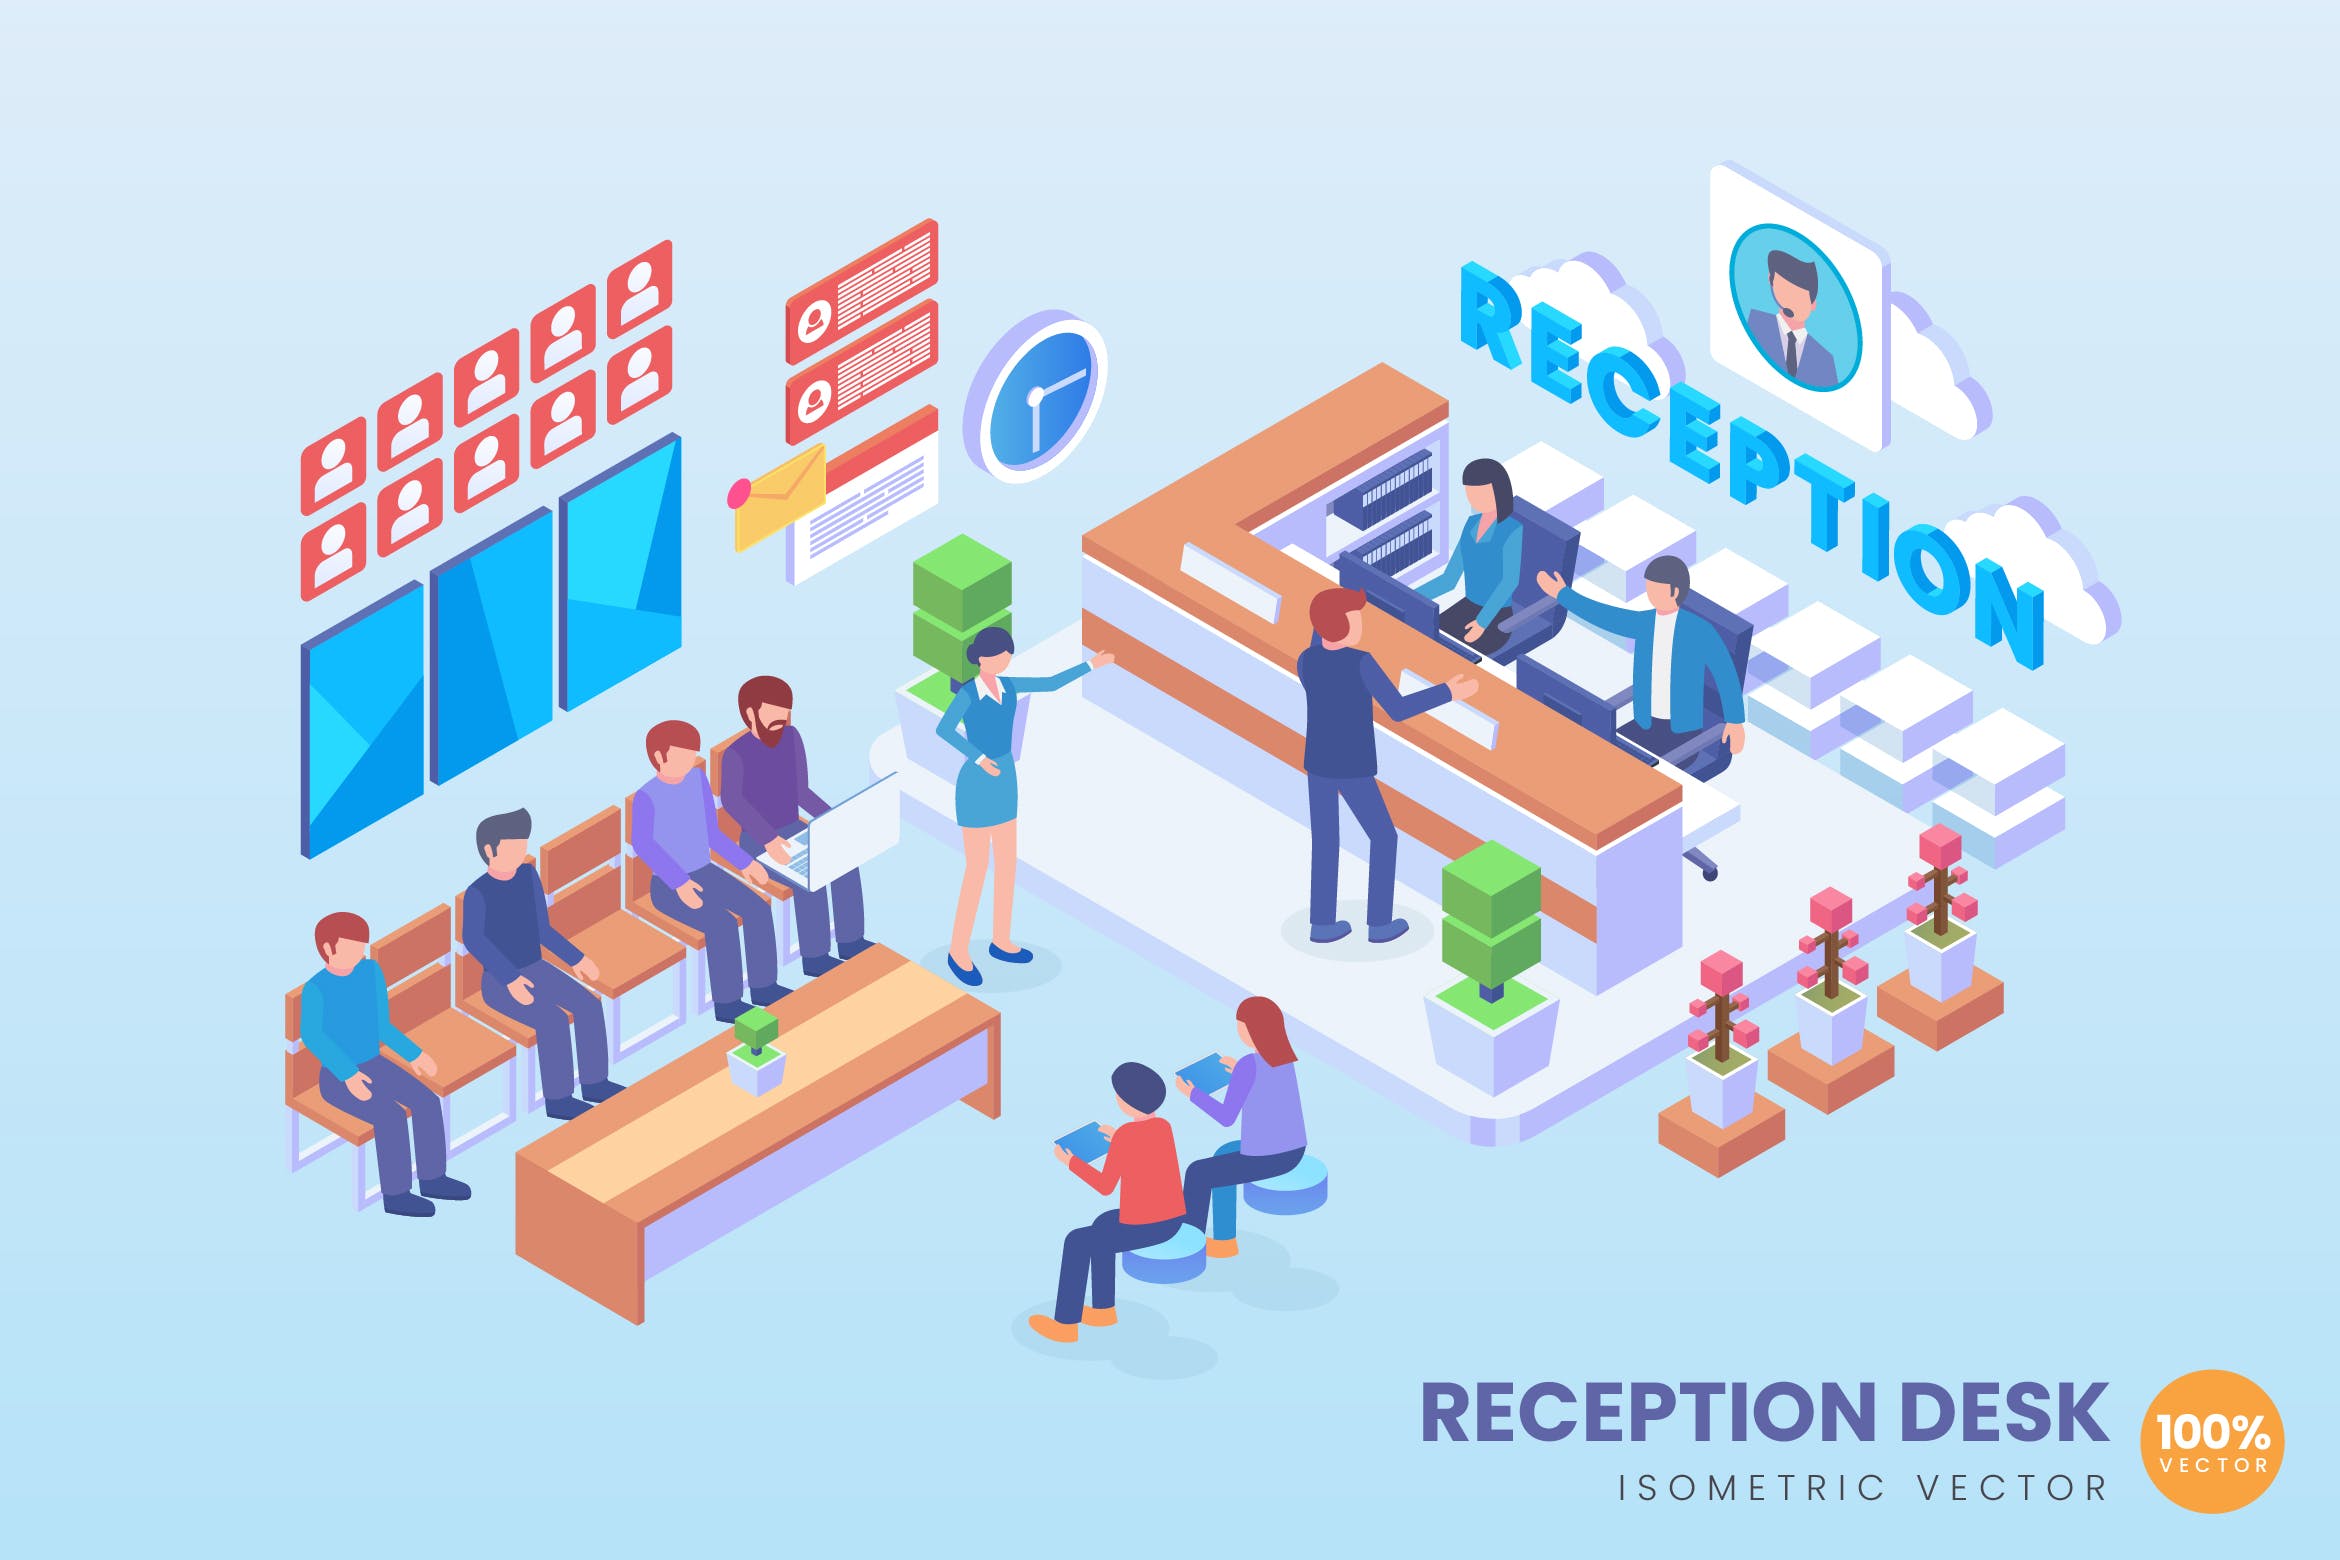 客户服务中心场景2.5D等距概念矢量插画第一素材精选 Isometric Reception Desk Vector Concept插图